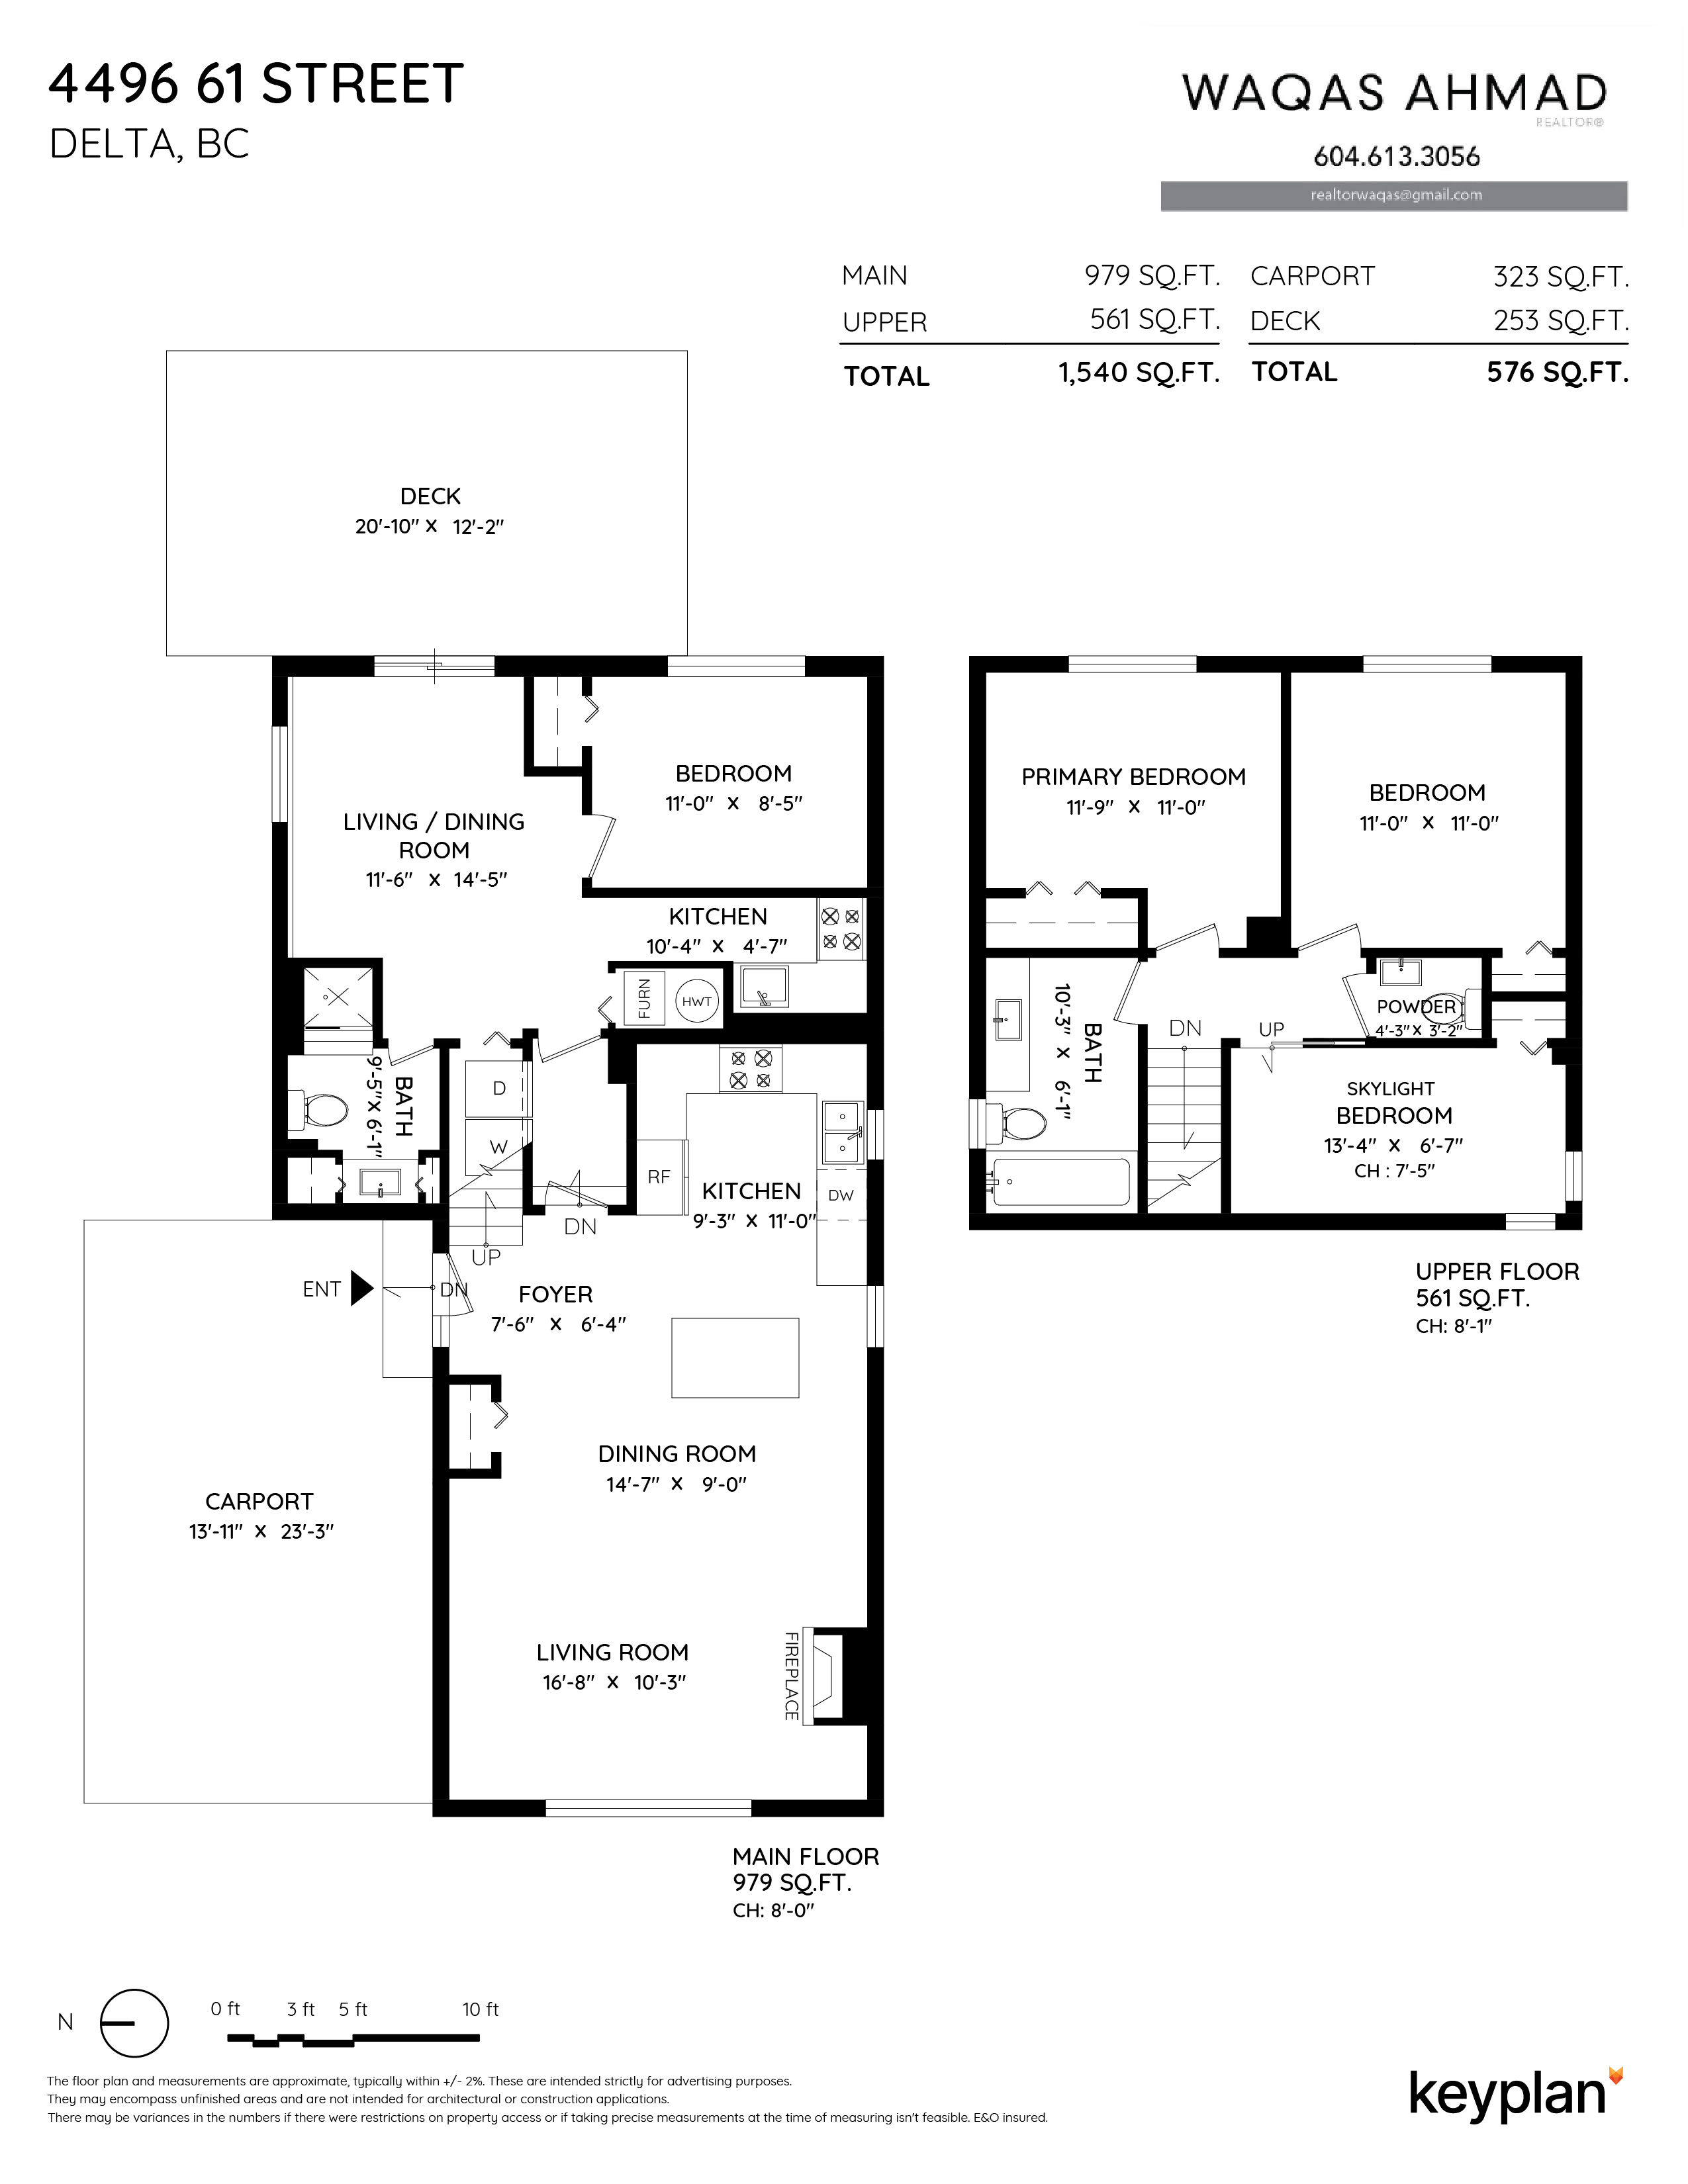 Waqas Ahmad - 4496 61 Street, Delta, BC, Canada | Floor Plan 1